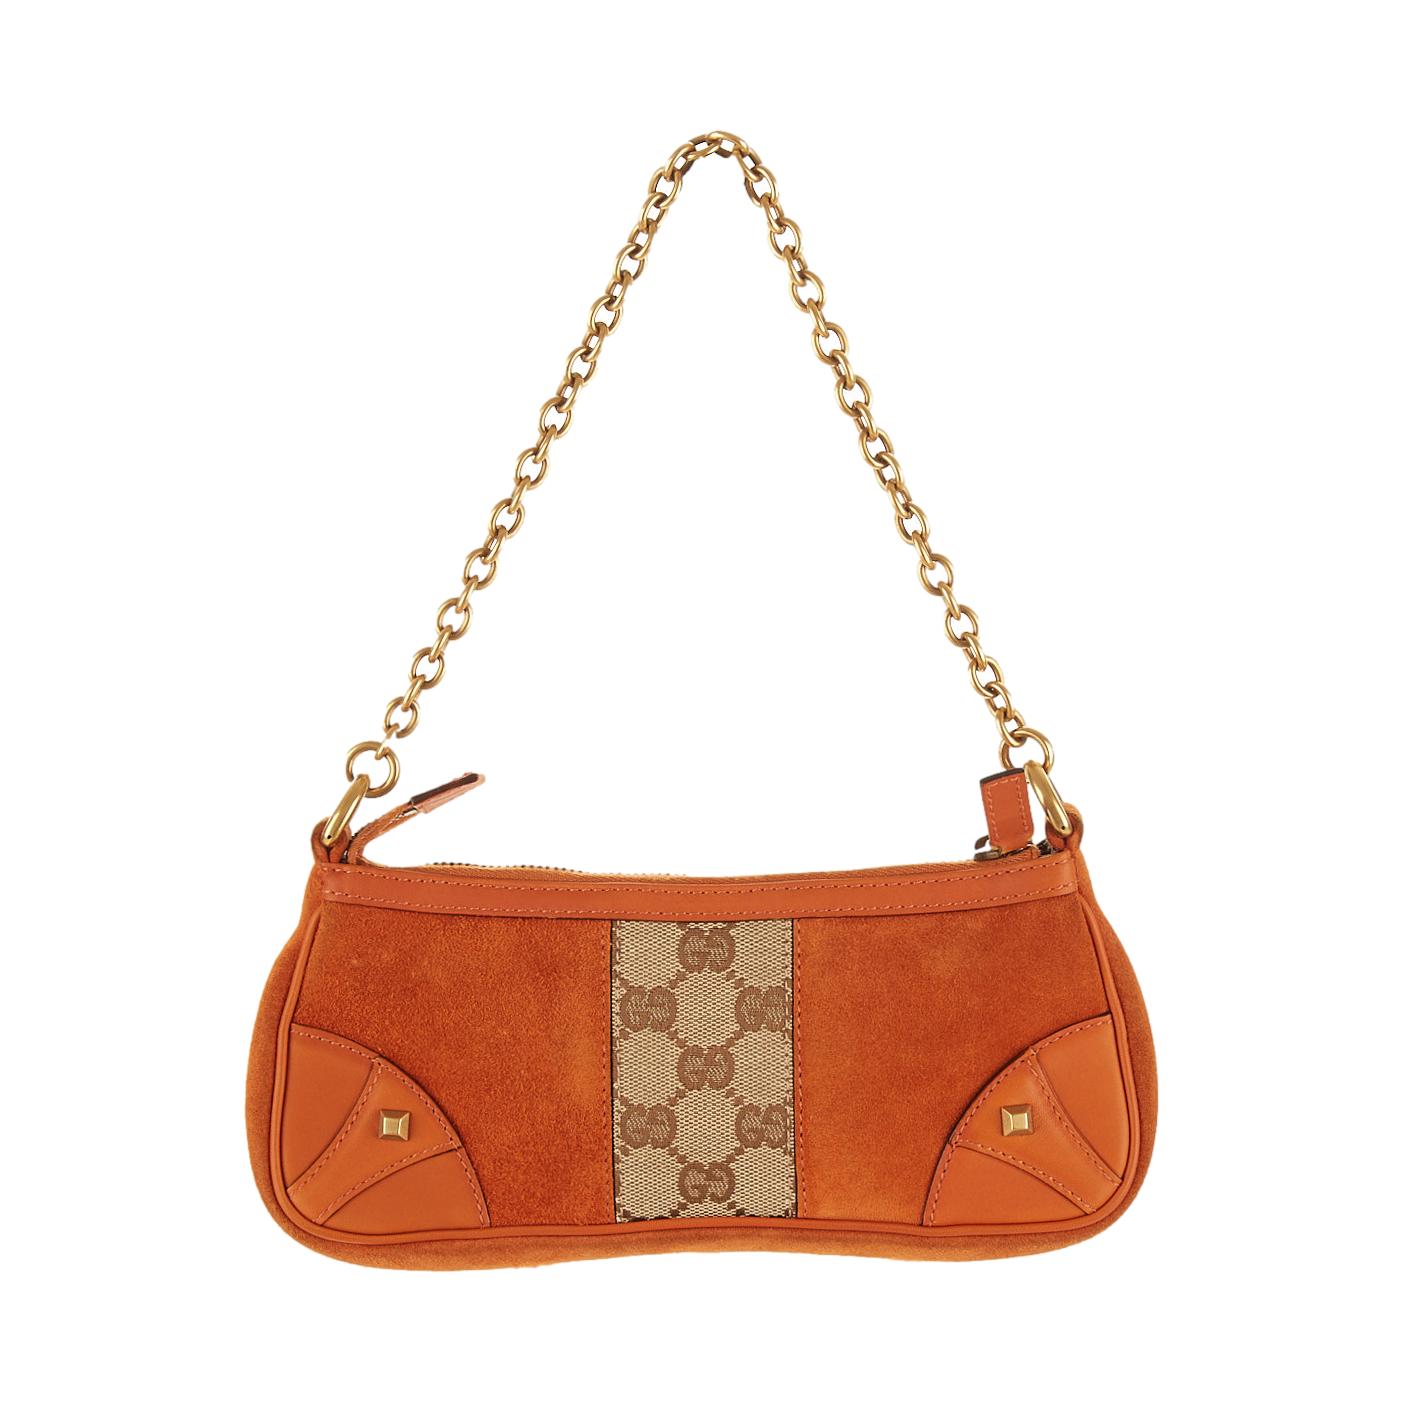 Gucci Orange Suede Shoulder Bag